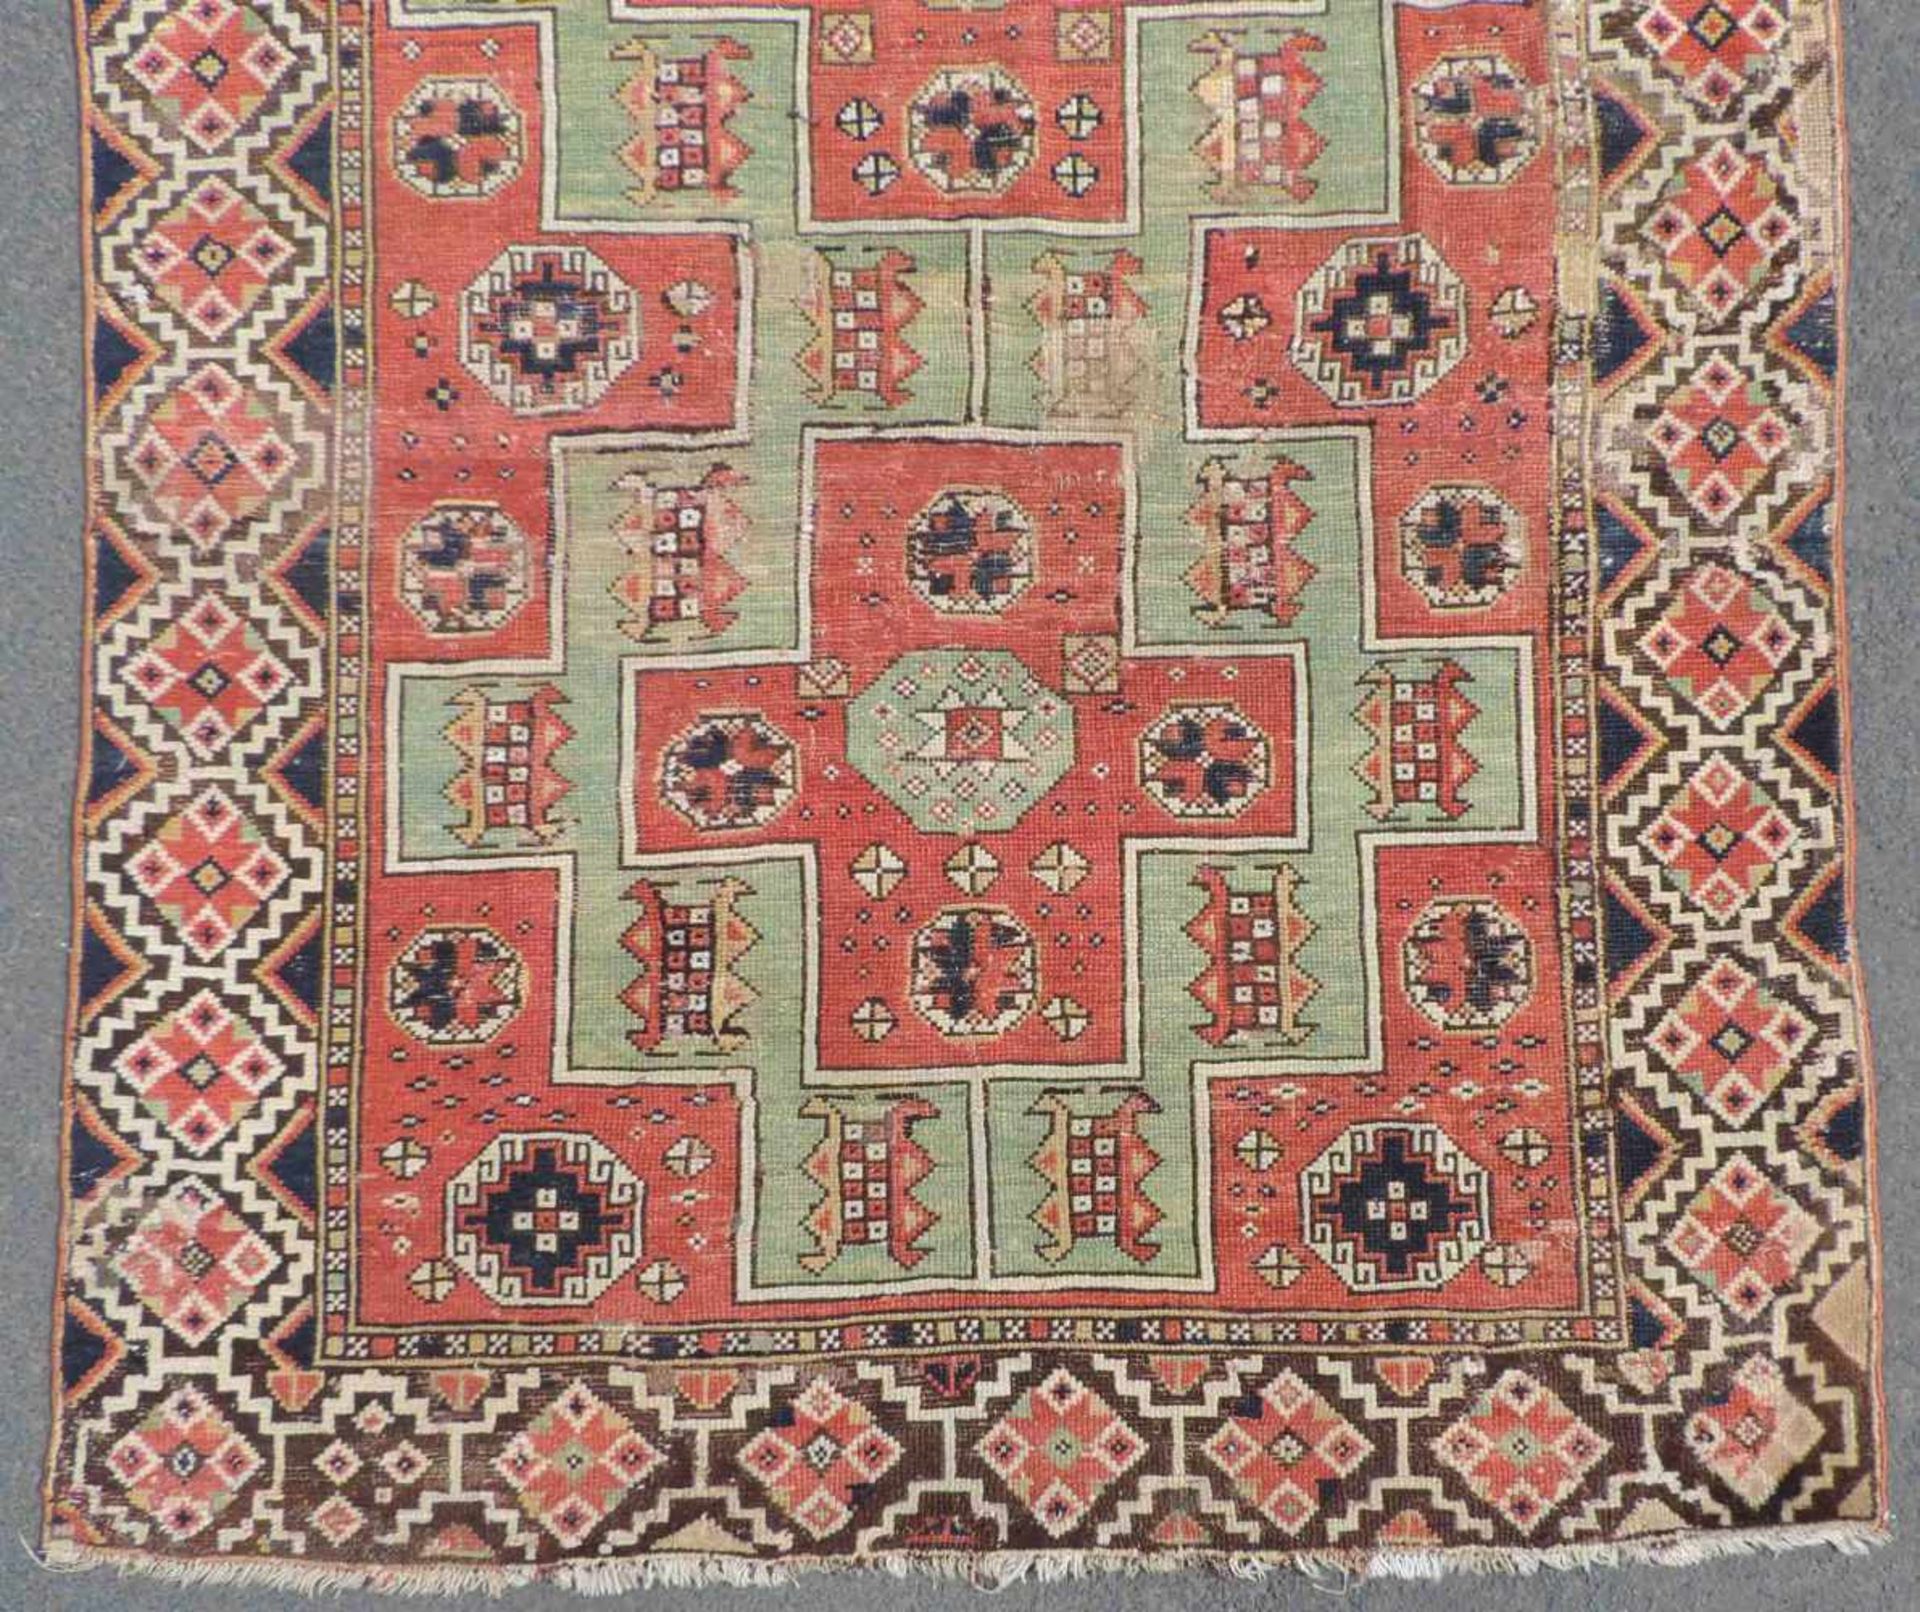 Bergama carpet. Western Anatolia. Turkey. Antique, around 1800. - Image 2 of 4